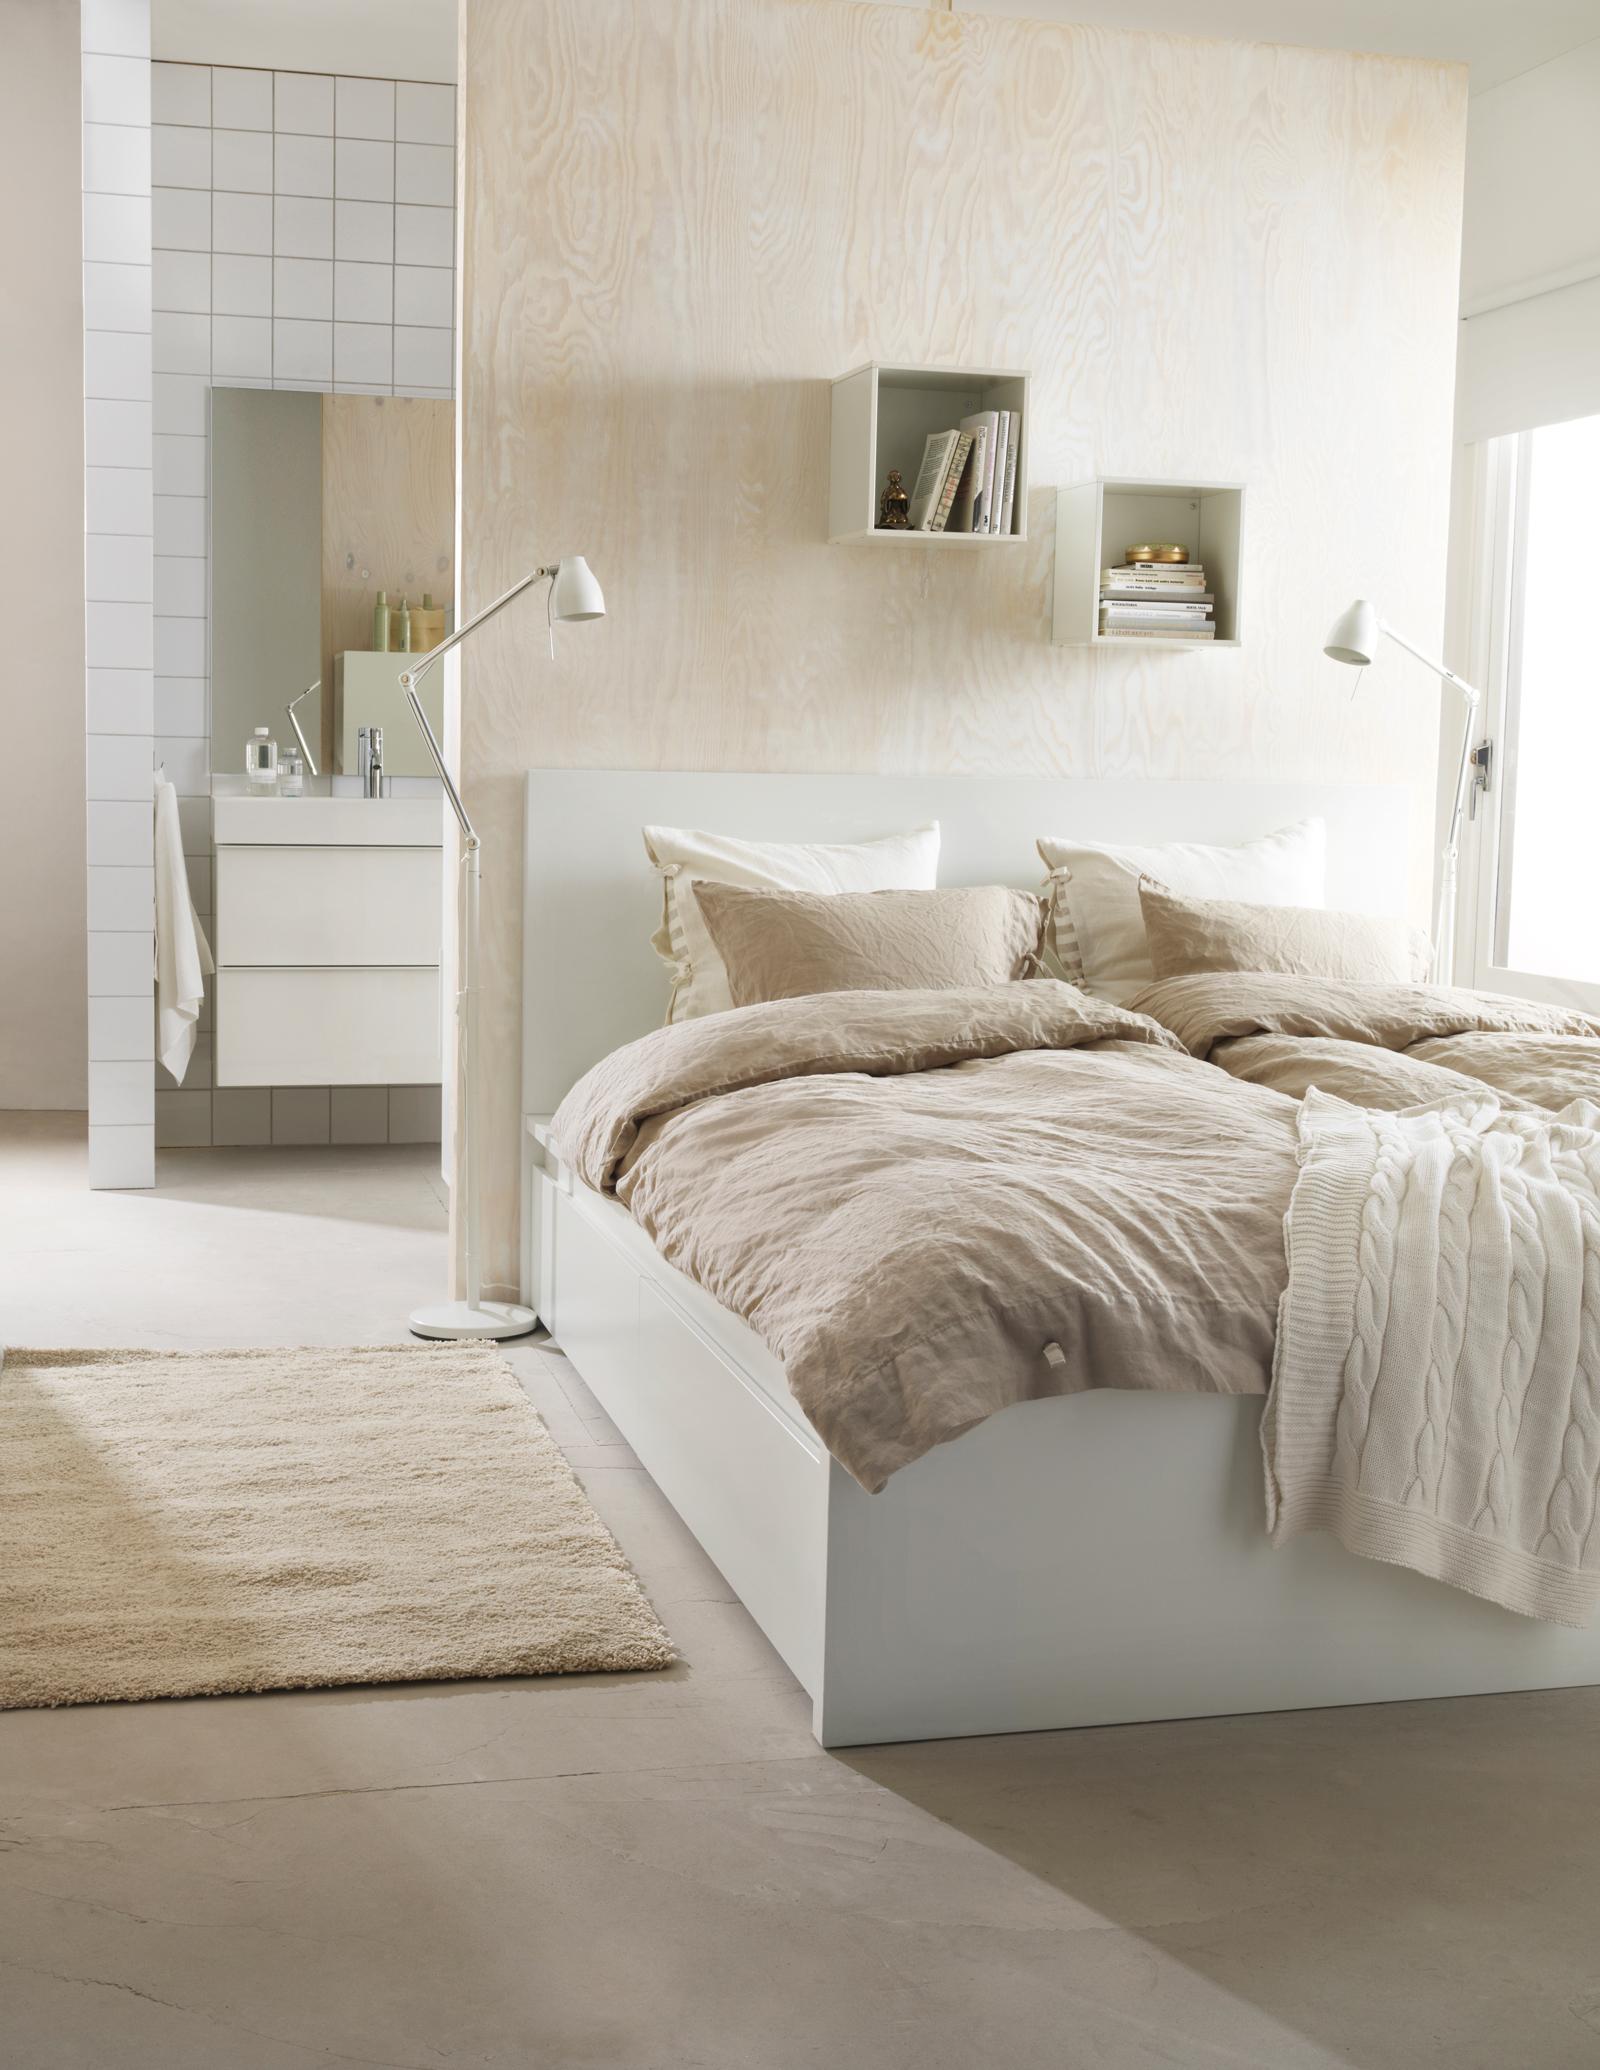 Crème-weiße Schlafzimmergestaltung #wandregal #pastellfarbe #ikea #cremefarben ©Inter IKEA Systems B.V.